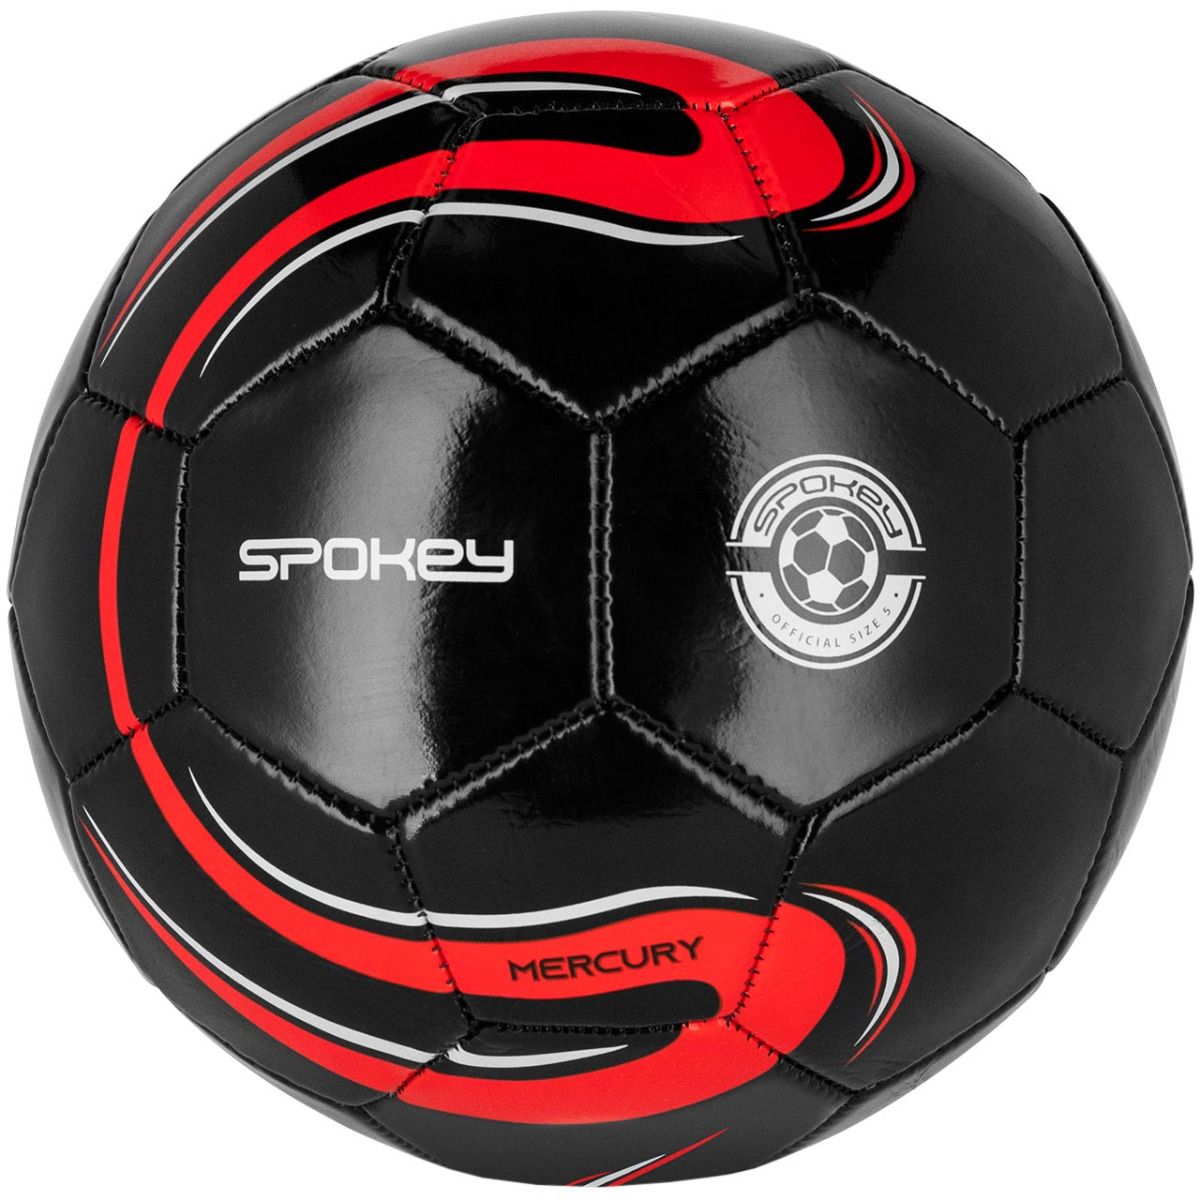 Spokey Fotbalový míč Mercury 942600